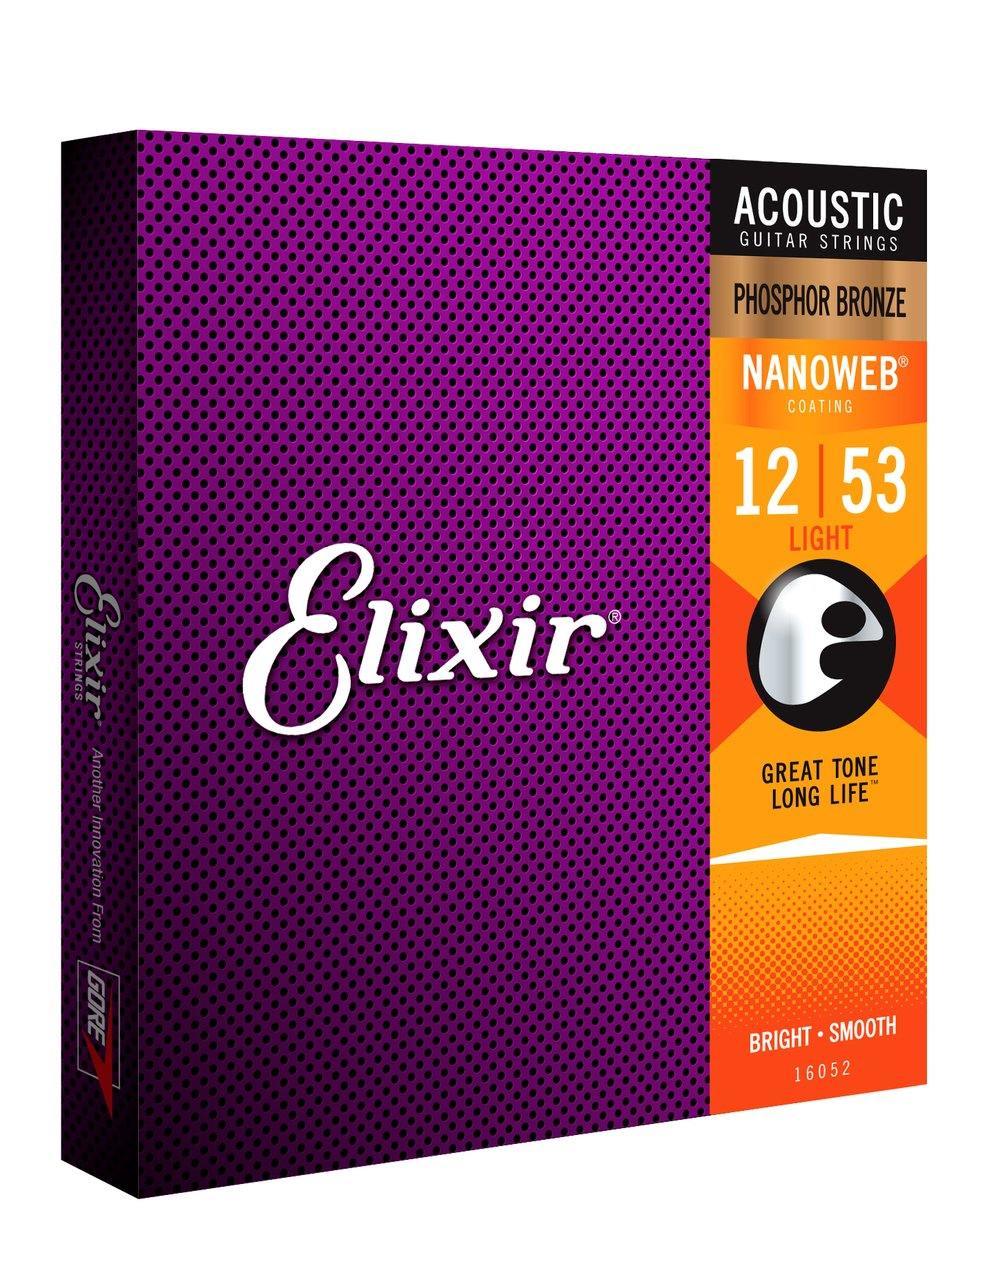 Elixir 12/53 Acoustic Guitar Strings Ctd-Ph/Br Lt Nanoweb - Strings - Acoustic Guitar by Elixir at Muso's Stuff